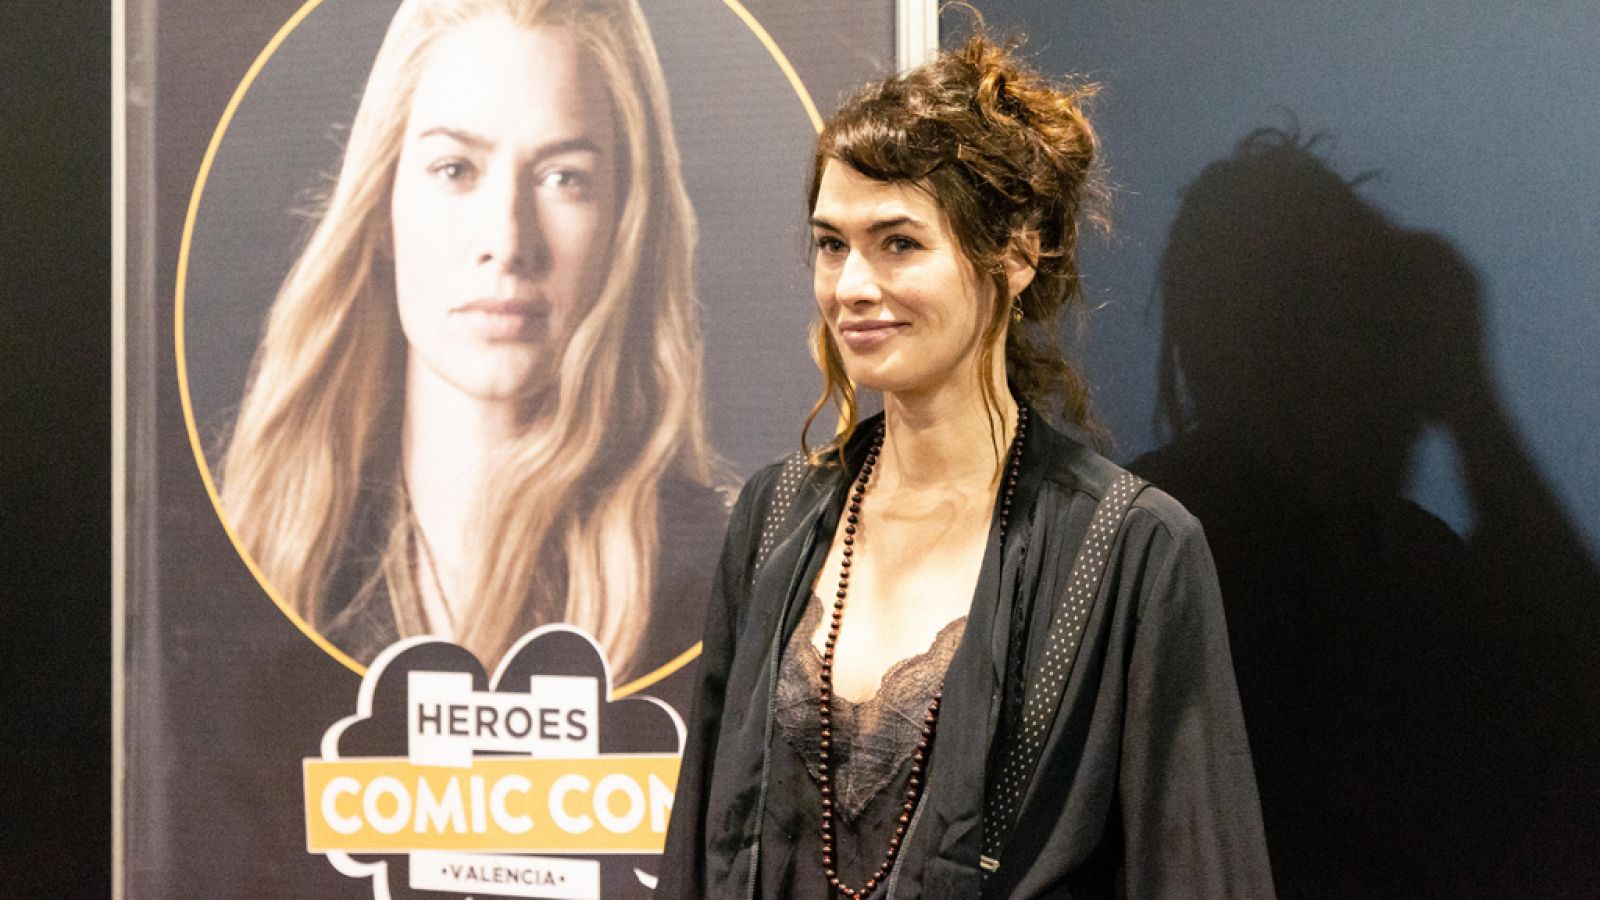 Lena Headey (Cersei Lannister) en Heroes Comic Con Valencia